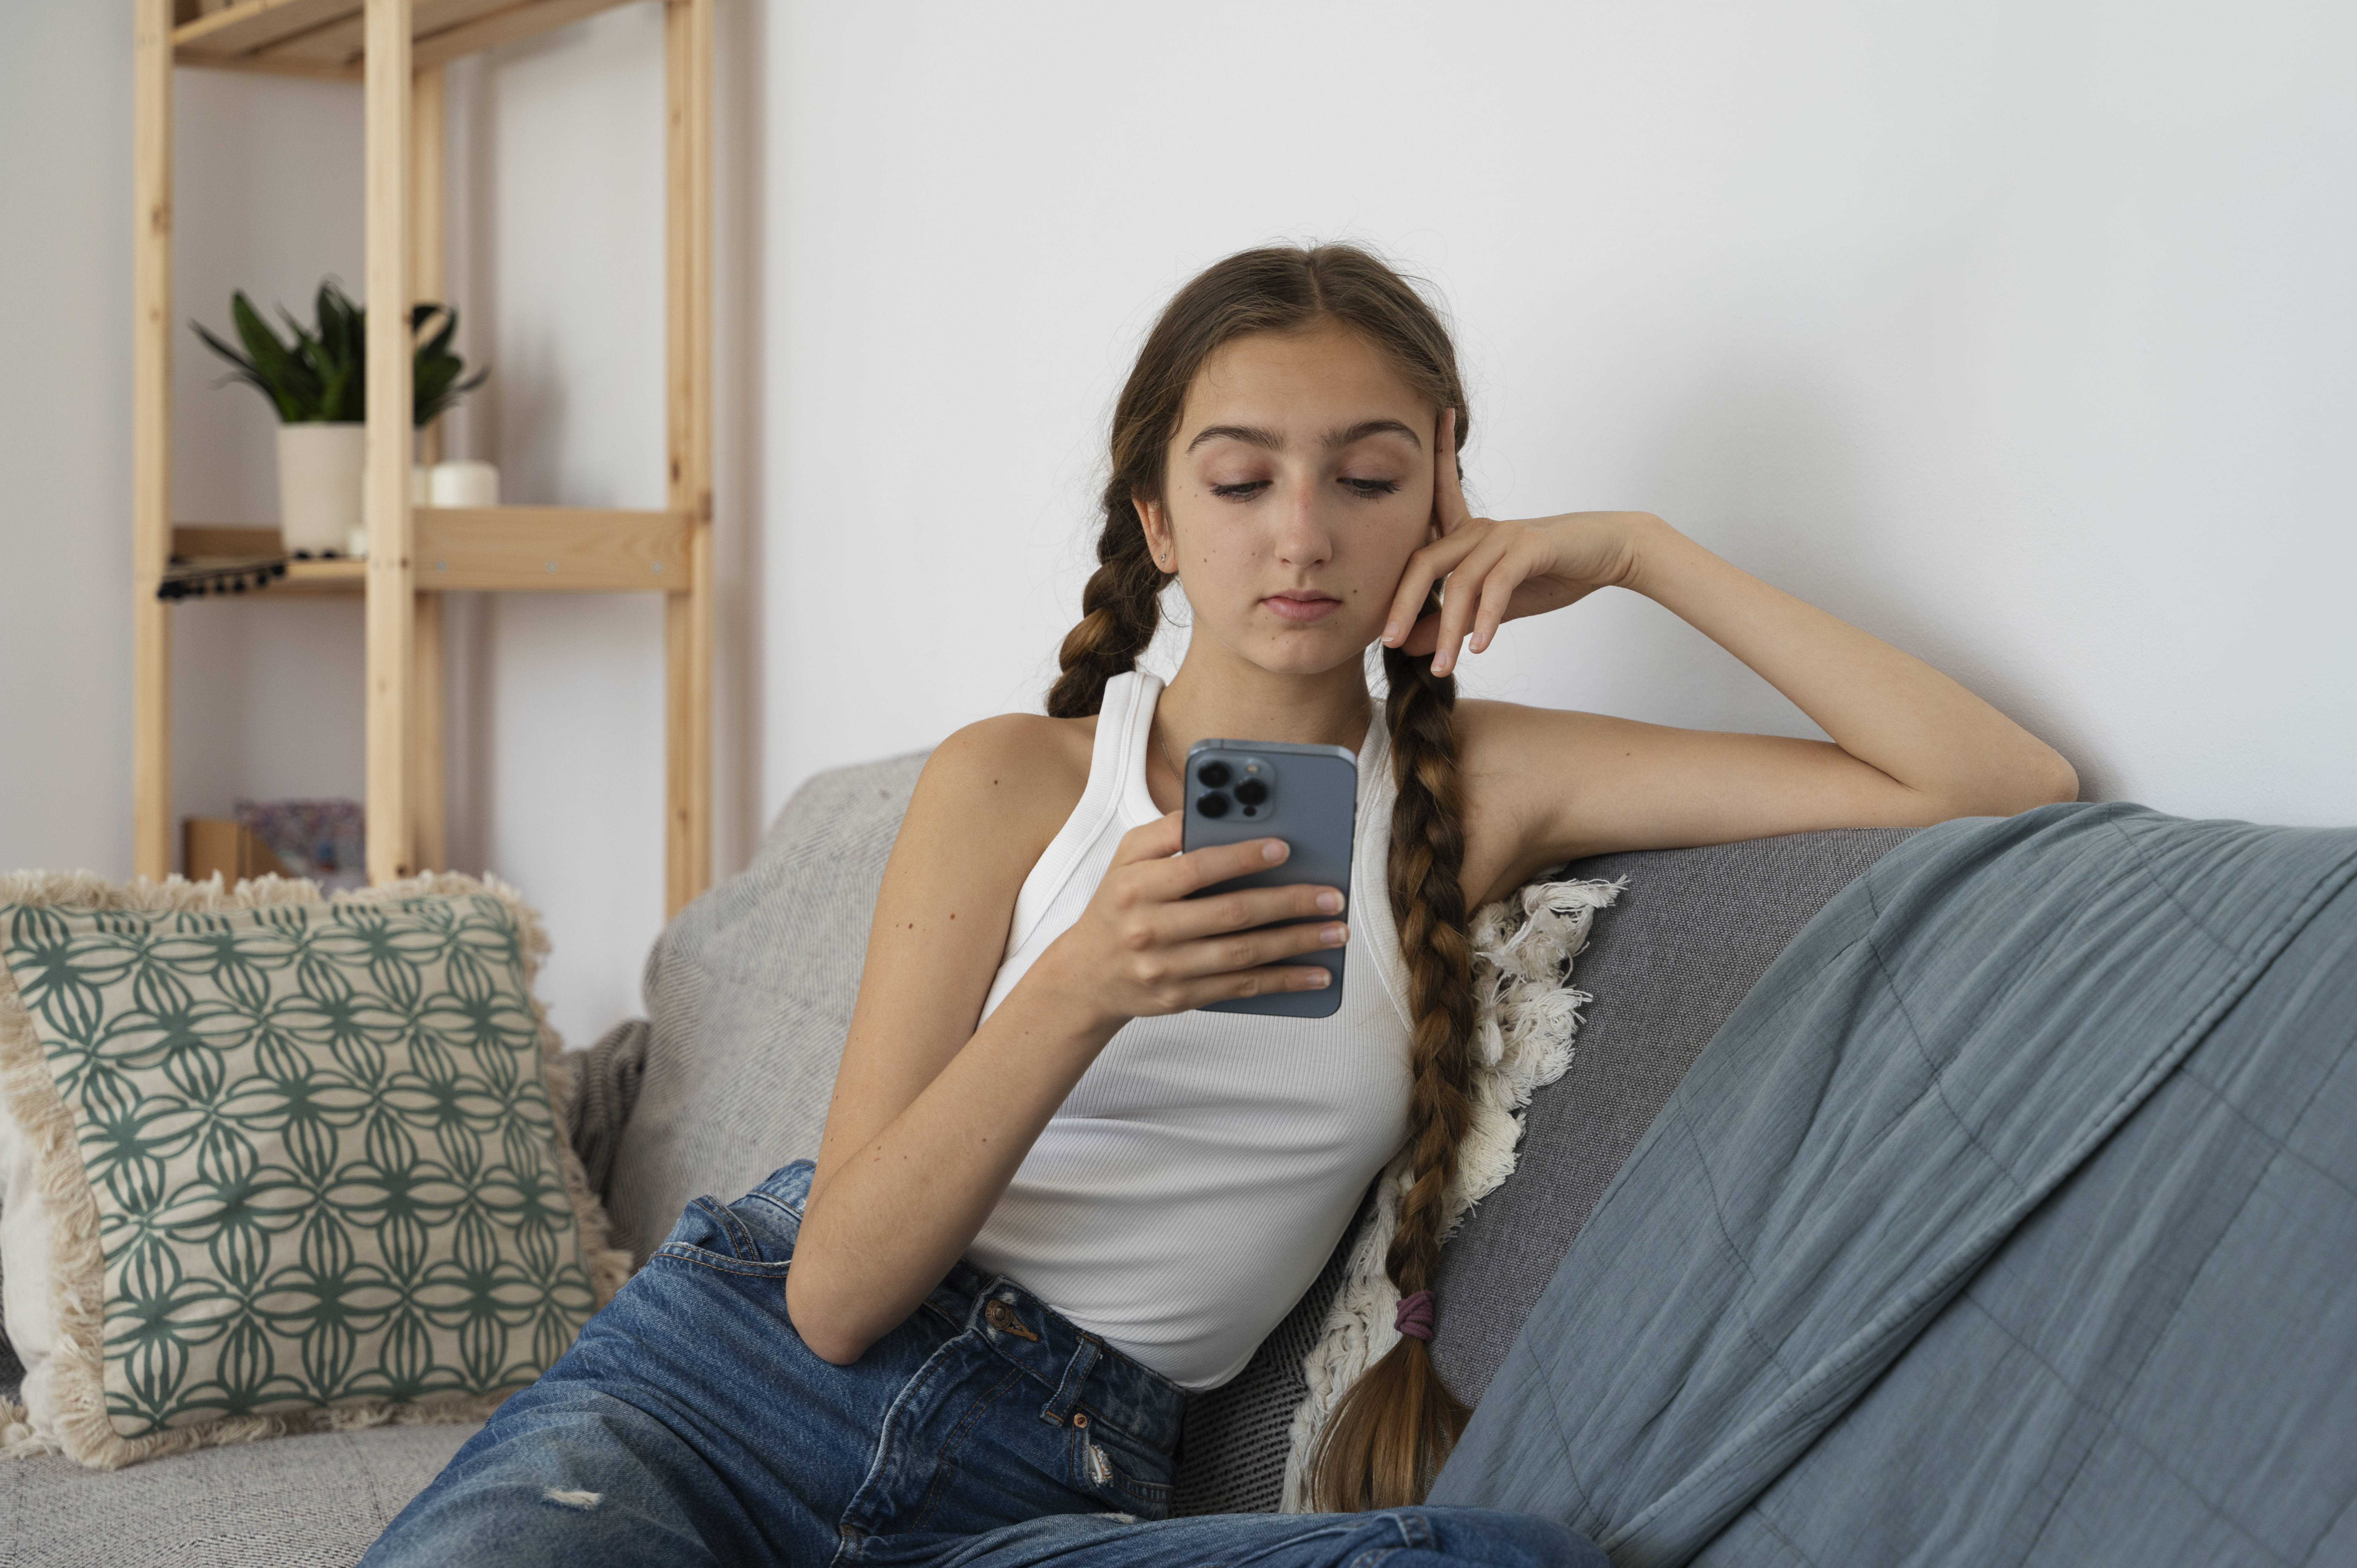 Jeune fille assise sur un canapé et fixant son téléphone portable | Source : Freepik